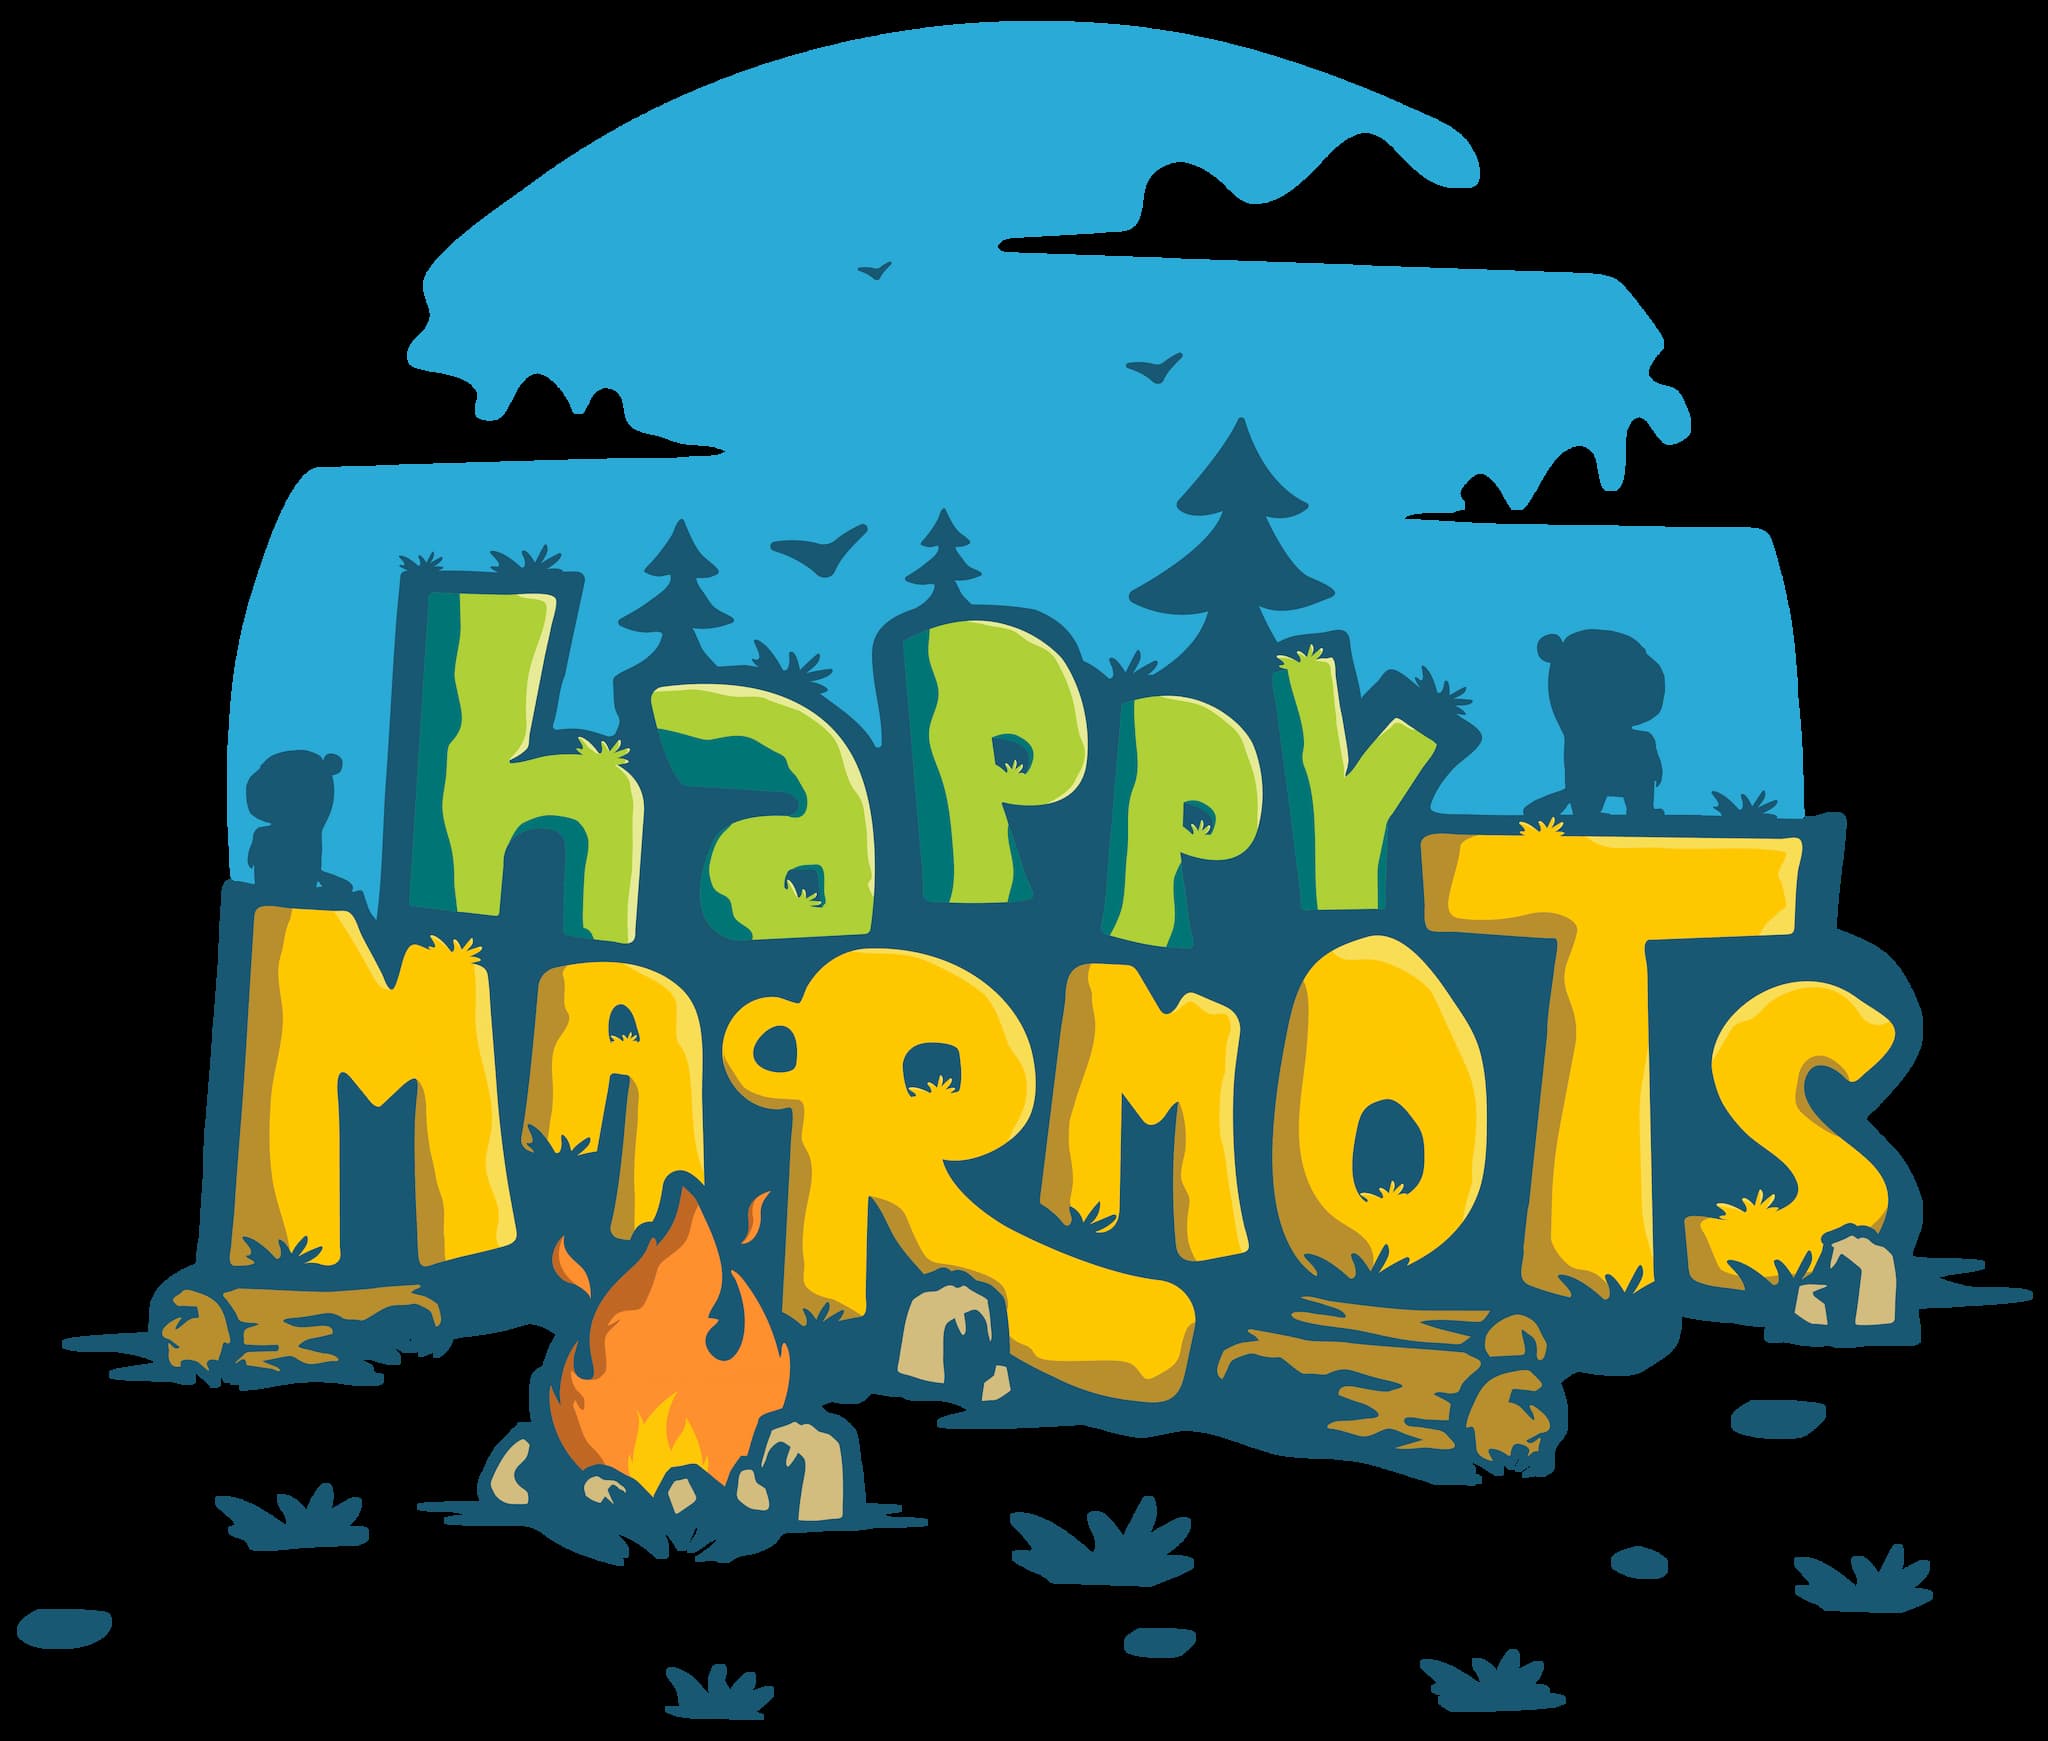 Happy marmots